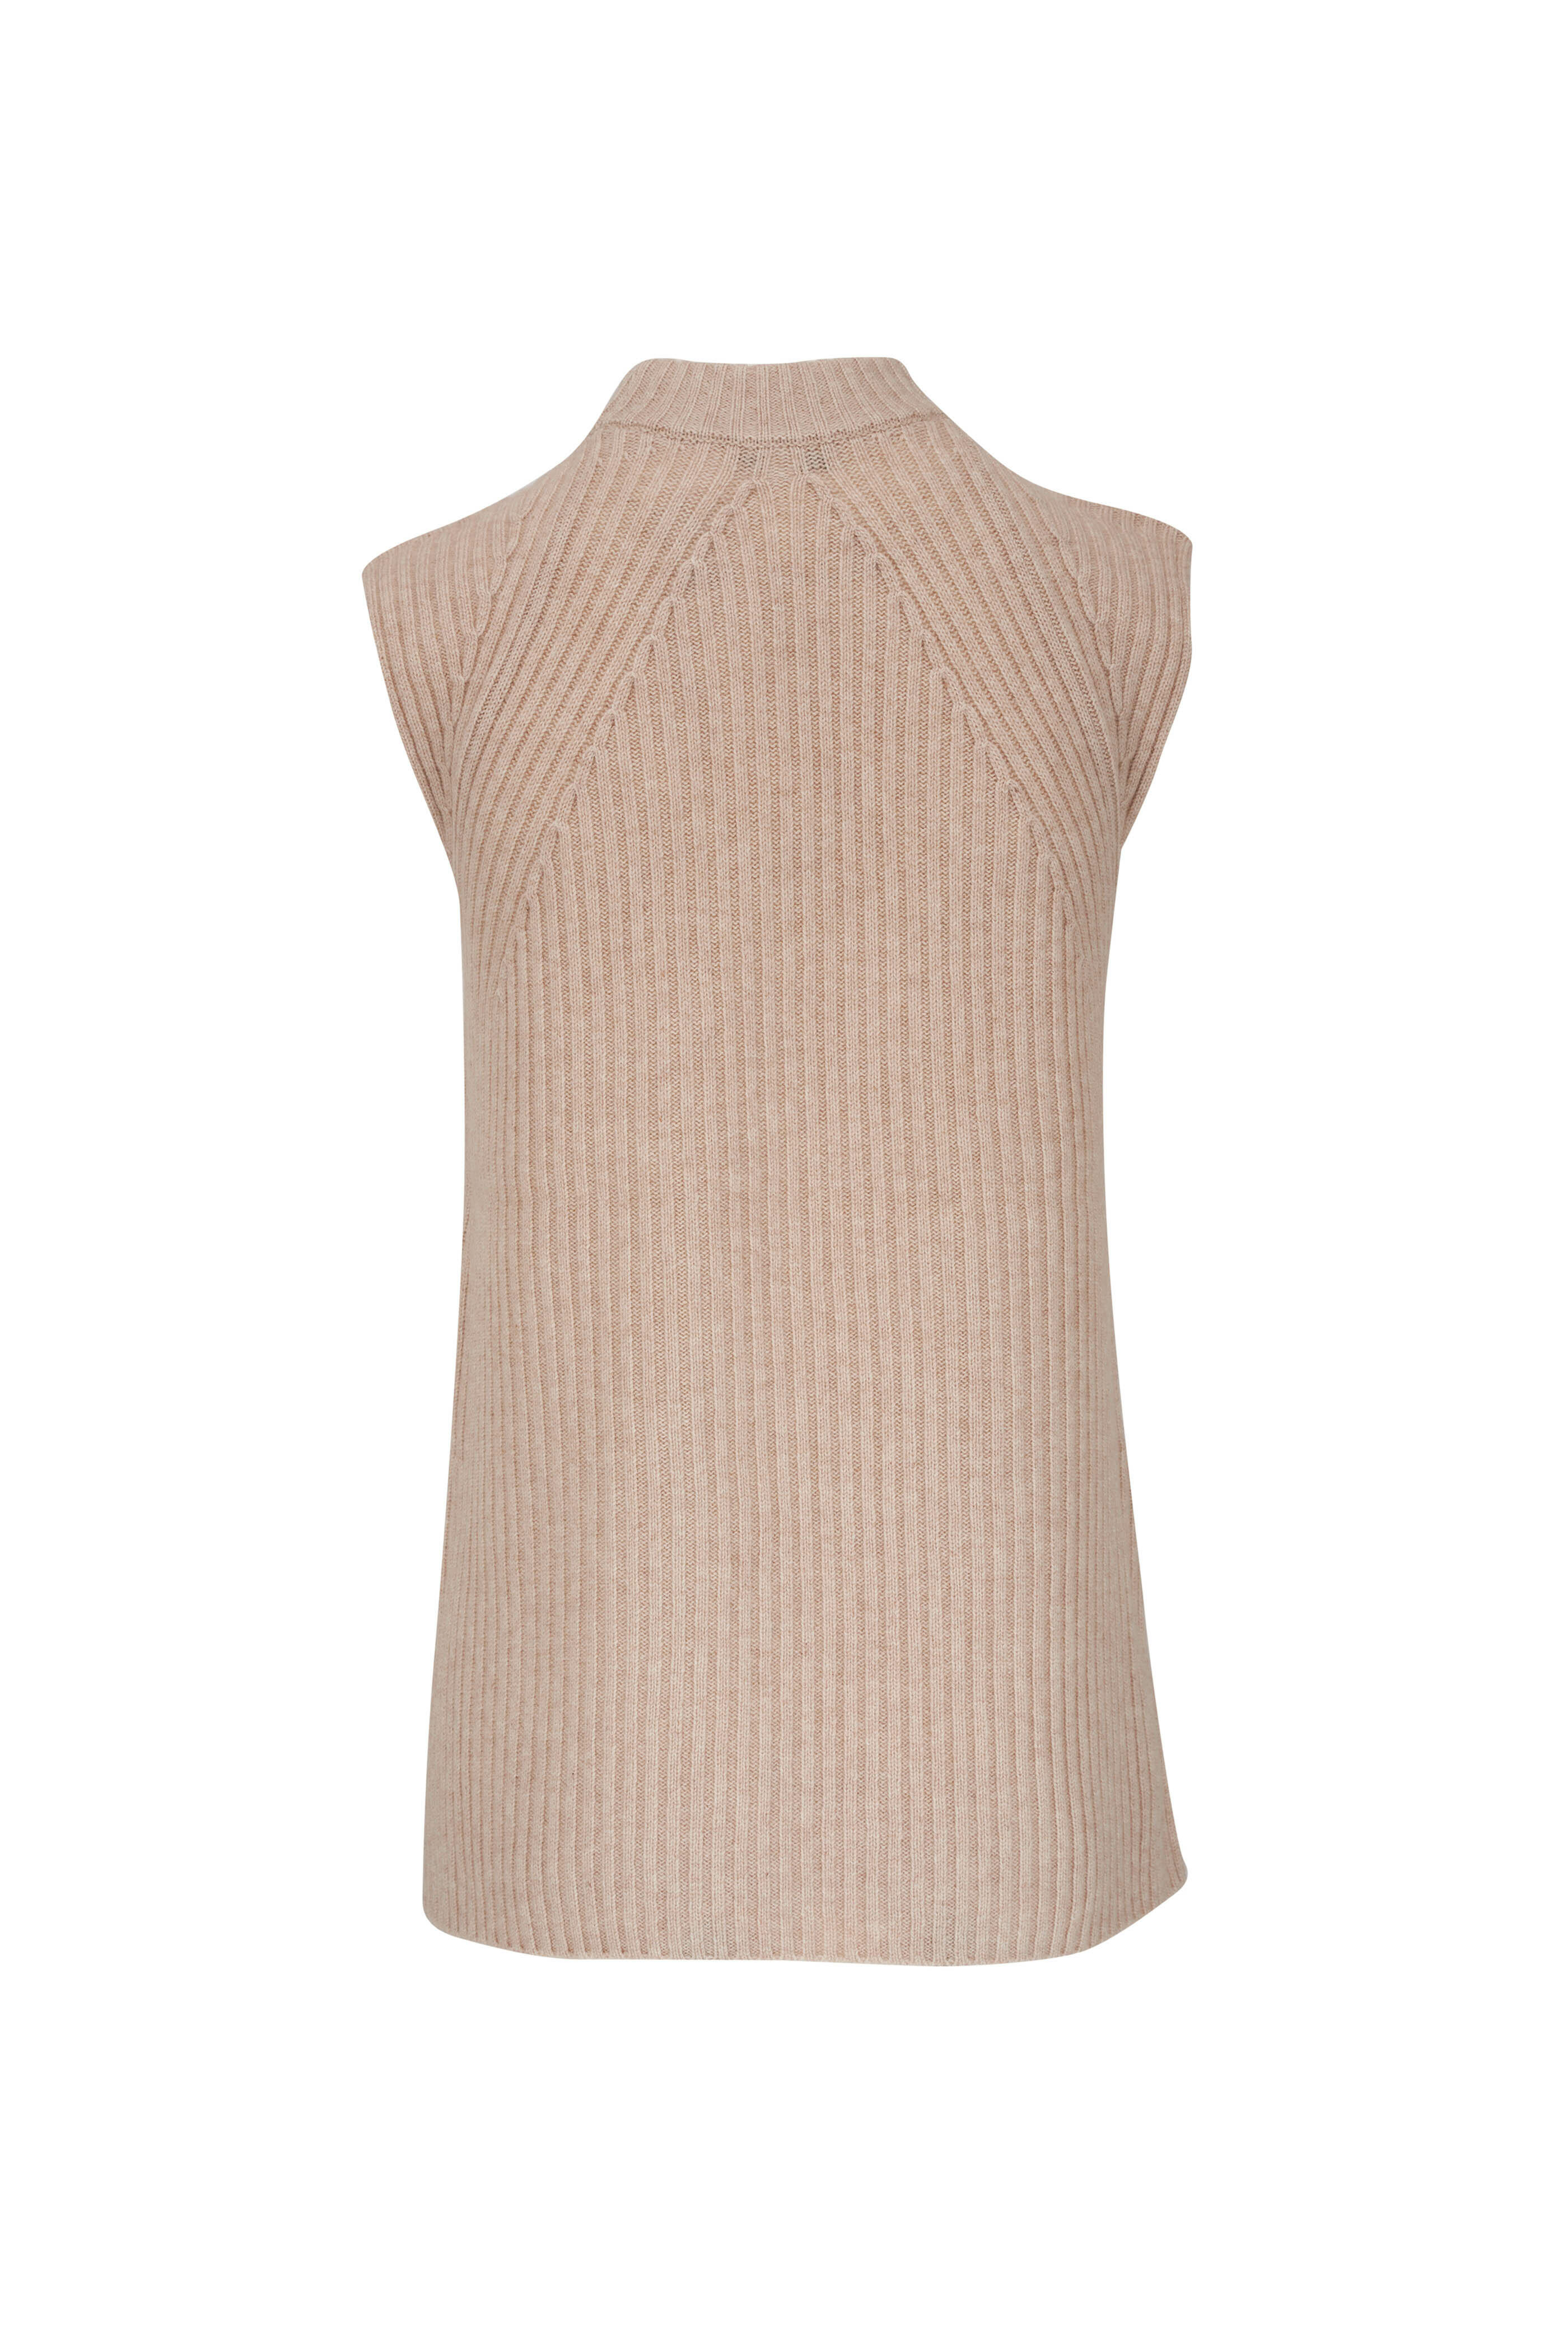 Vuittamins Two-Tone Sweater - Luxury Knitwear - Ready to Wear, Women  1A9254